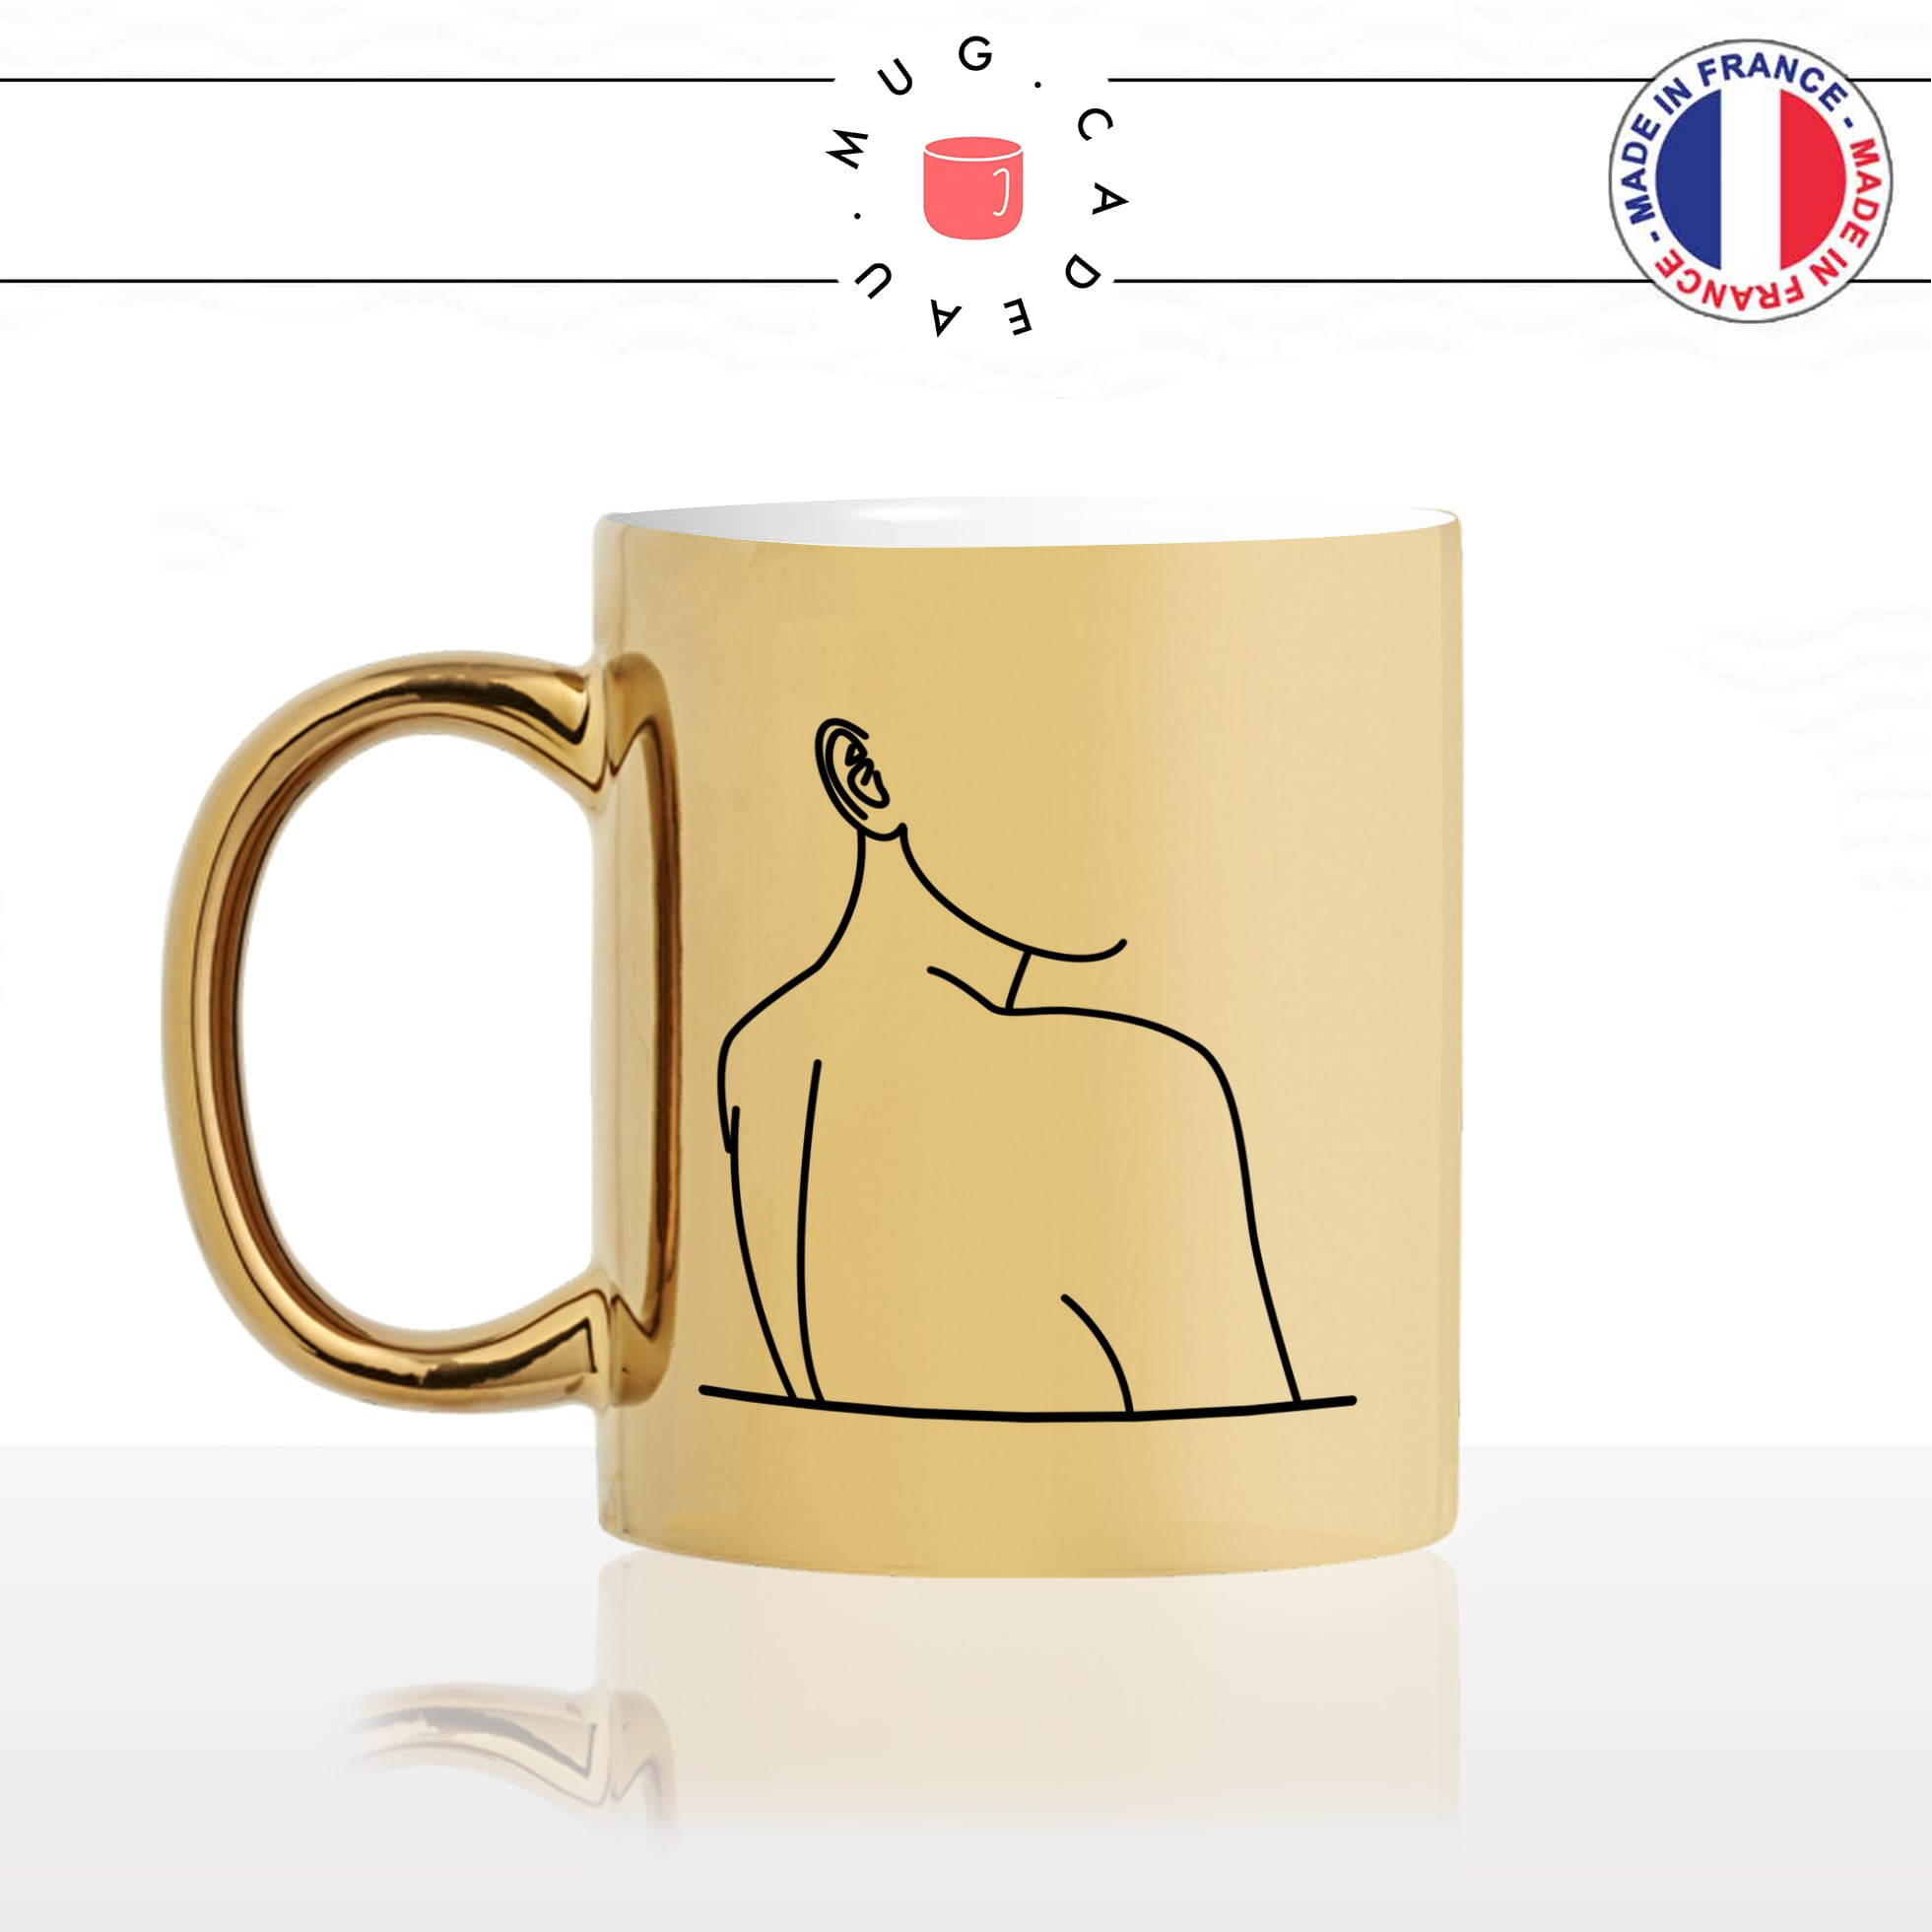 mug-tasse-doré-or-gold-dessin-dos-de-femme-sexy-original-offrir-fun-idée-cadeau-personnalisé-café-thé-min